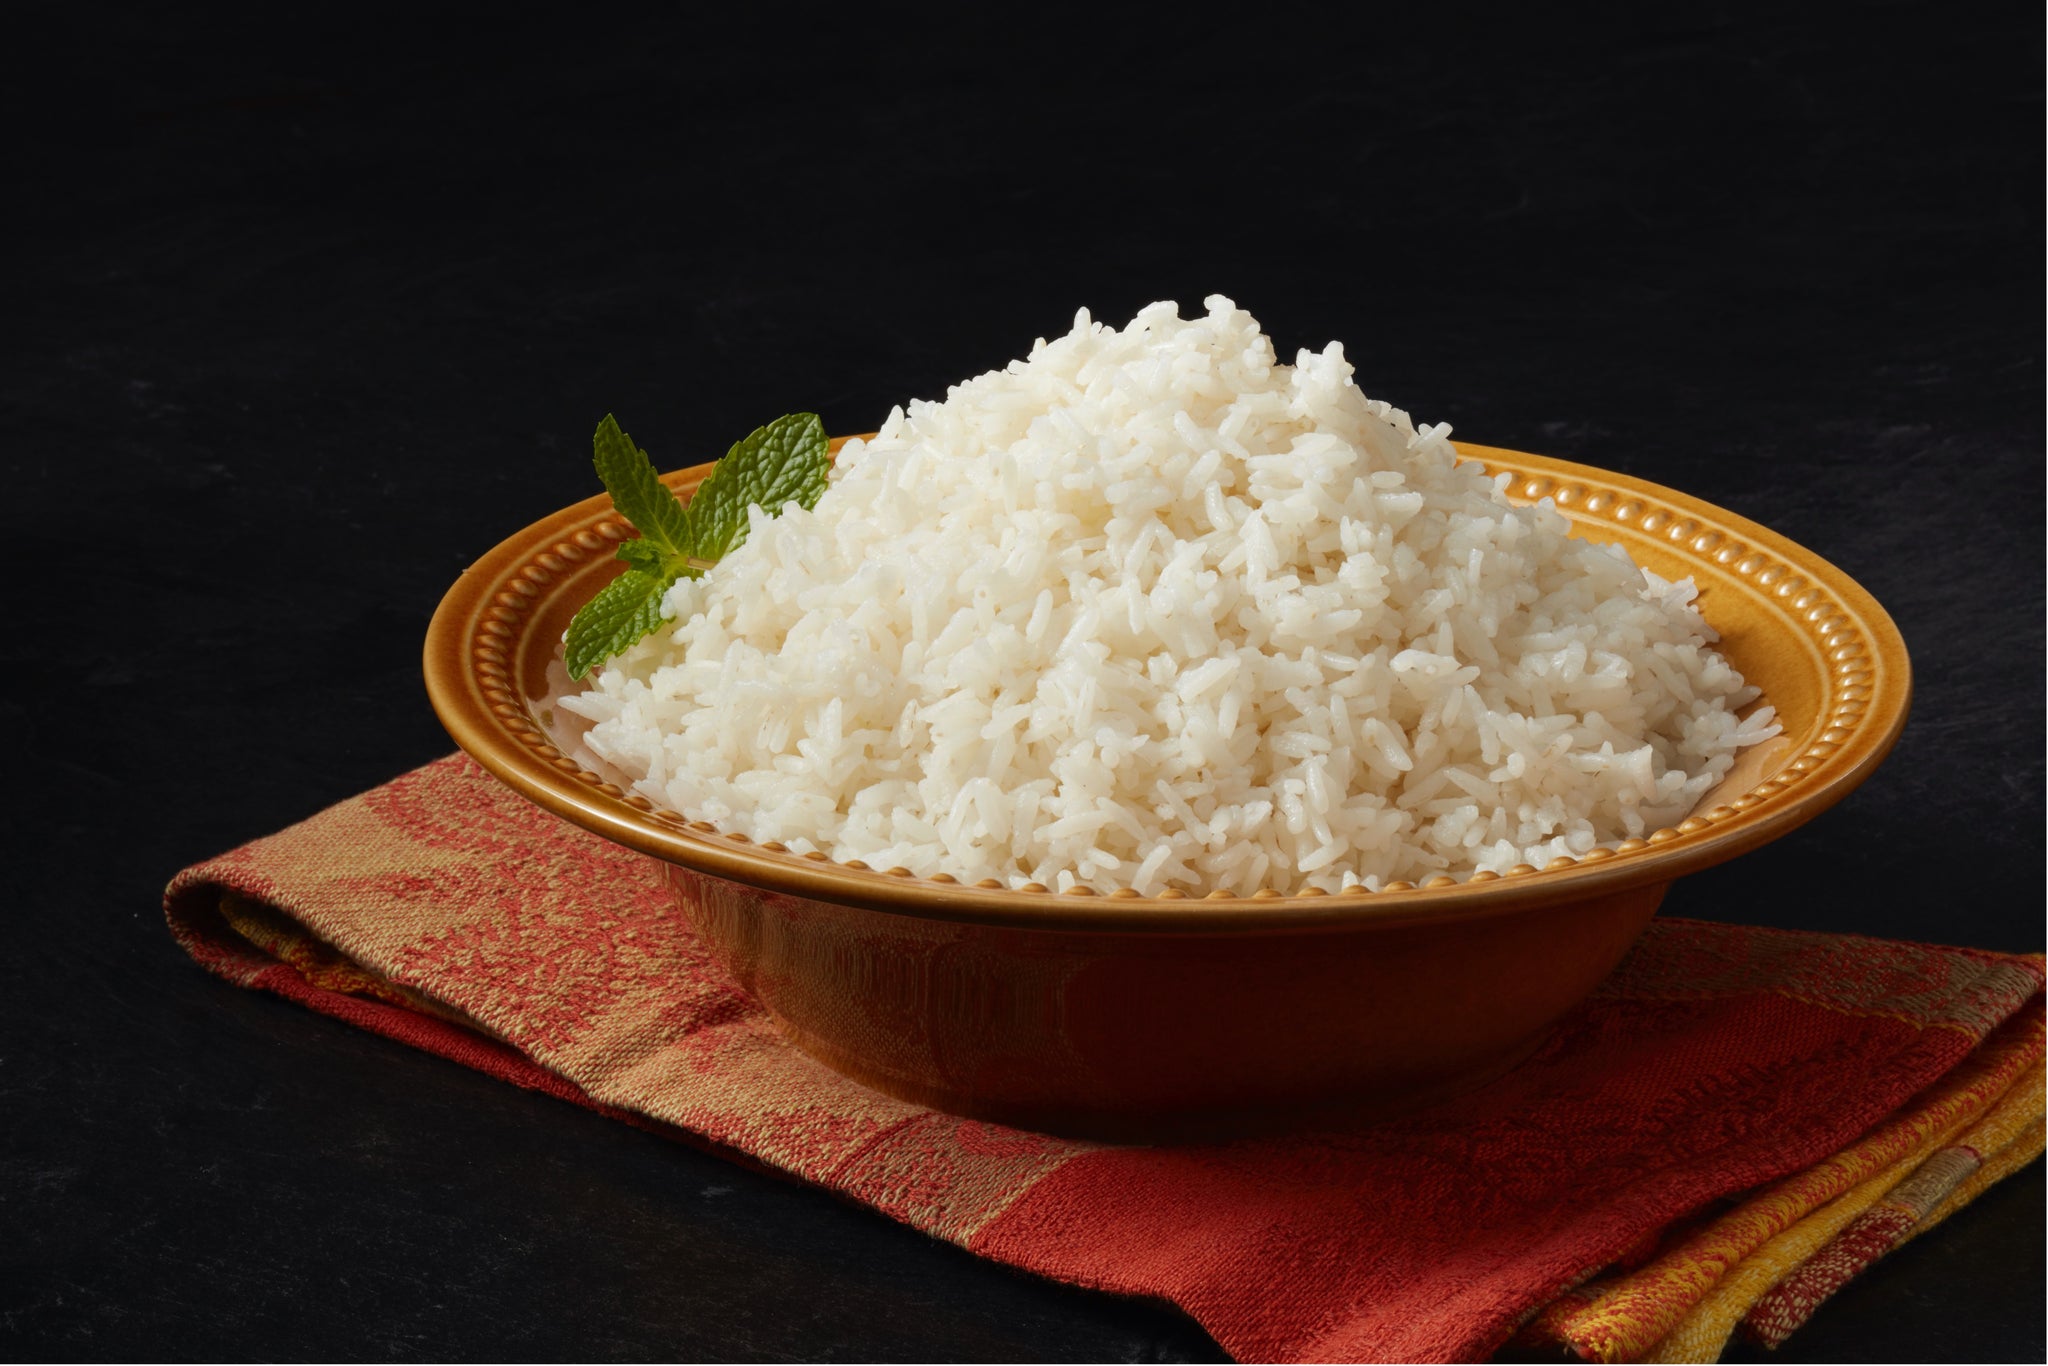 Organic Sona Masoori White Rice